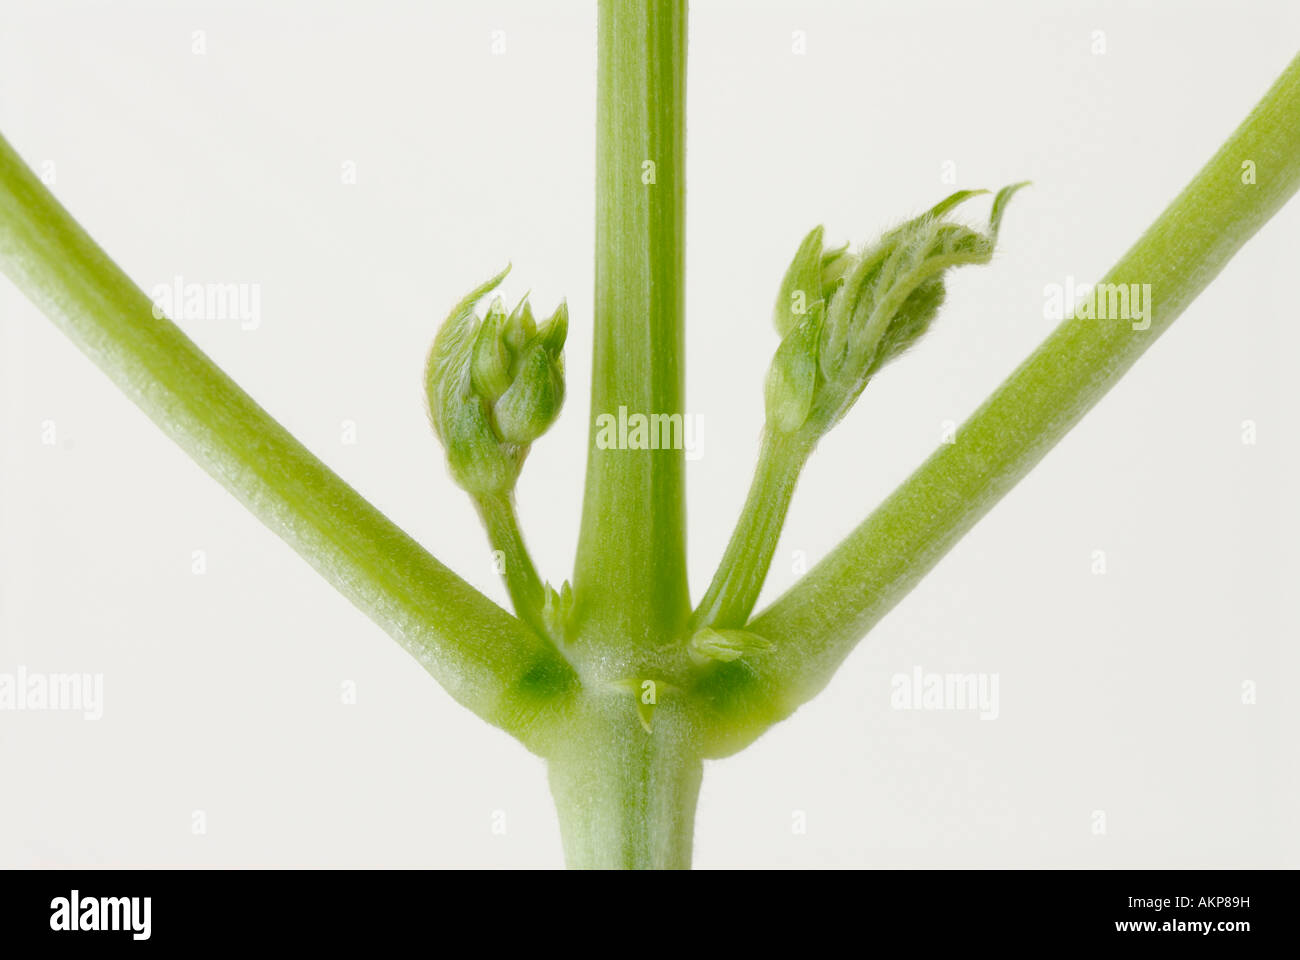 Lateral o yemas axilares y tallos de una planta Foto de stock